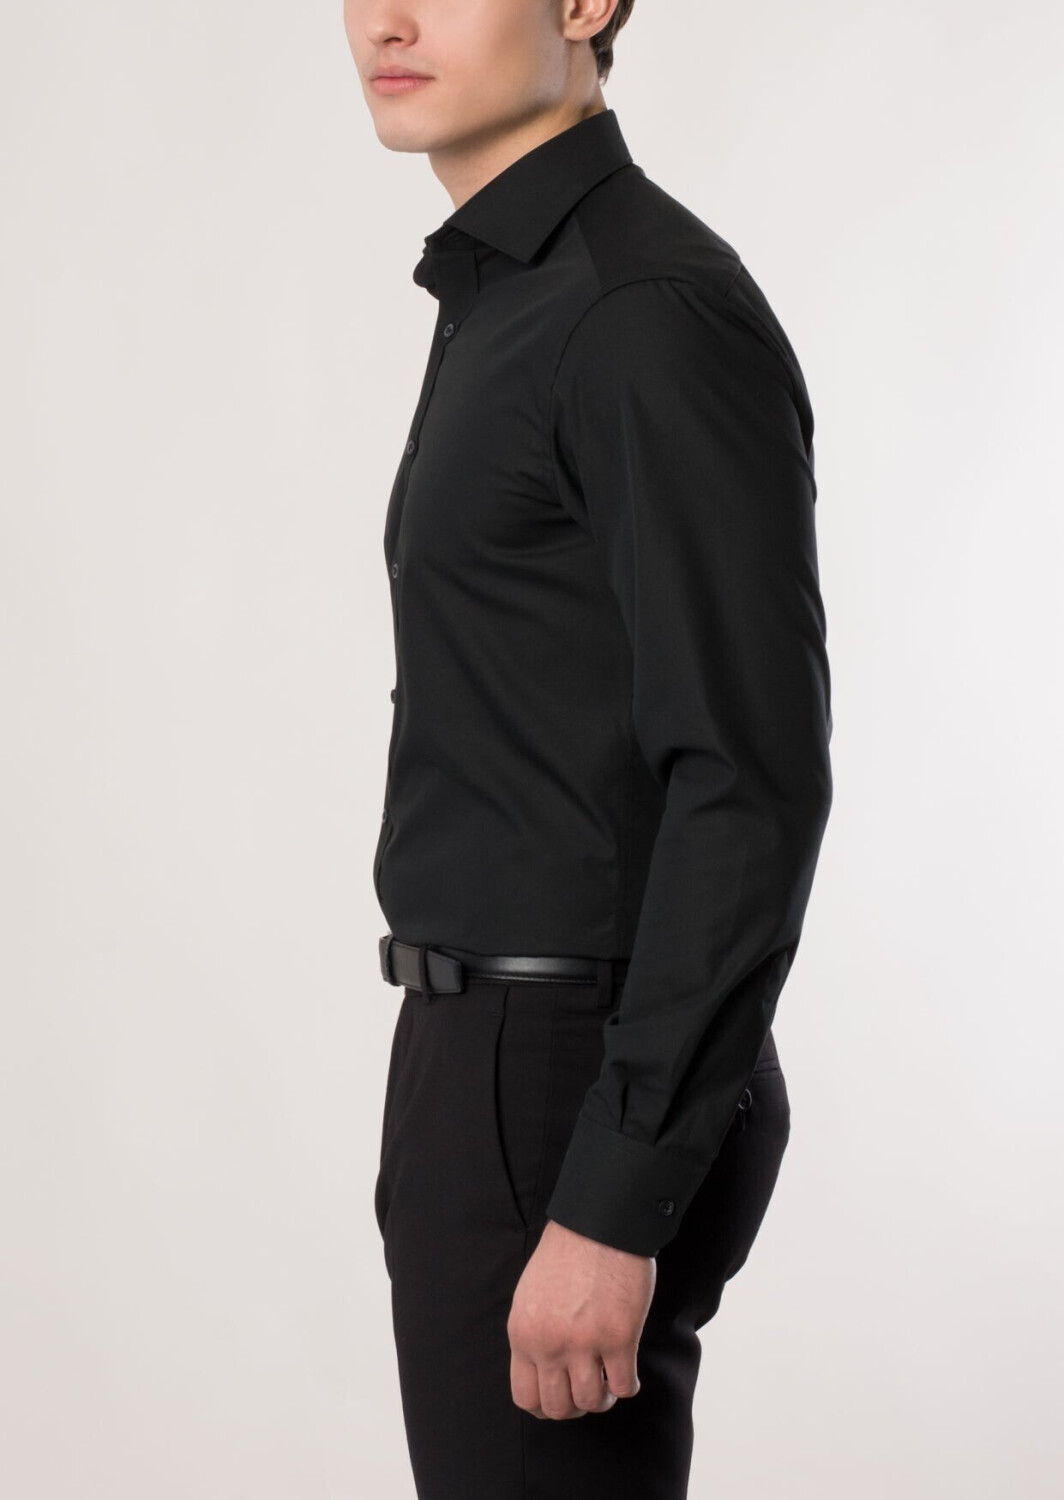 Eterna Modern Fit Hemd langer schwarz extra | (1100-39-X177) Arm Preisvergleich 44,99 ab € bei